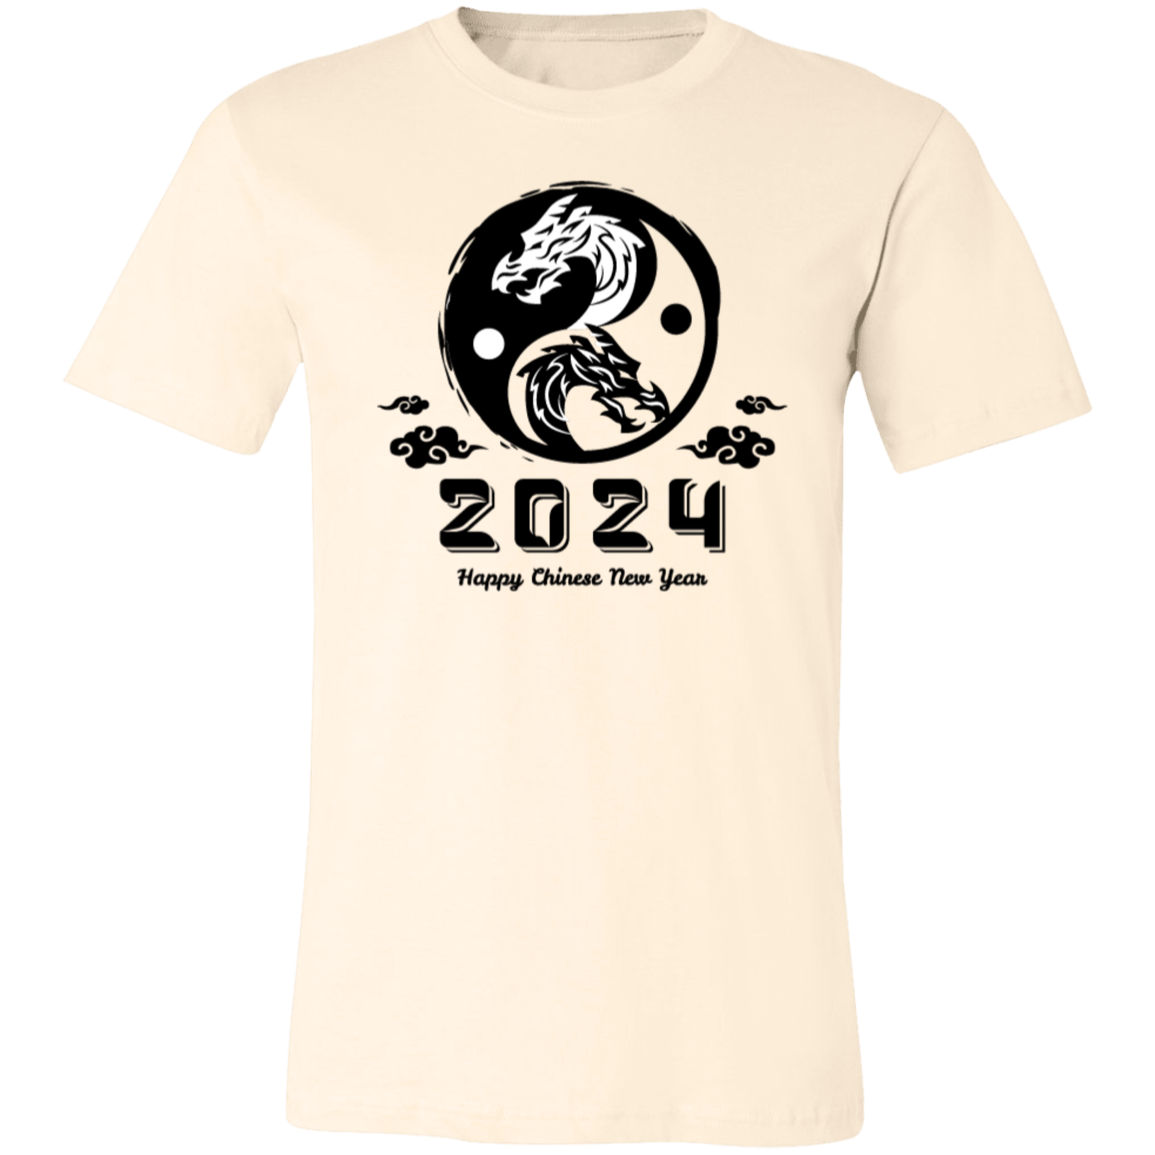 2024 Happy Chinese New Year Shirt